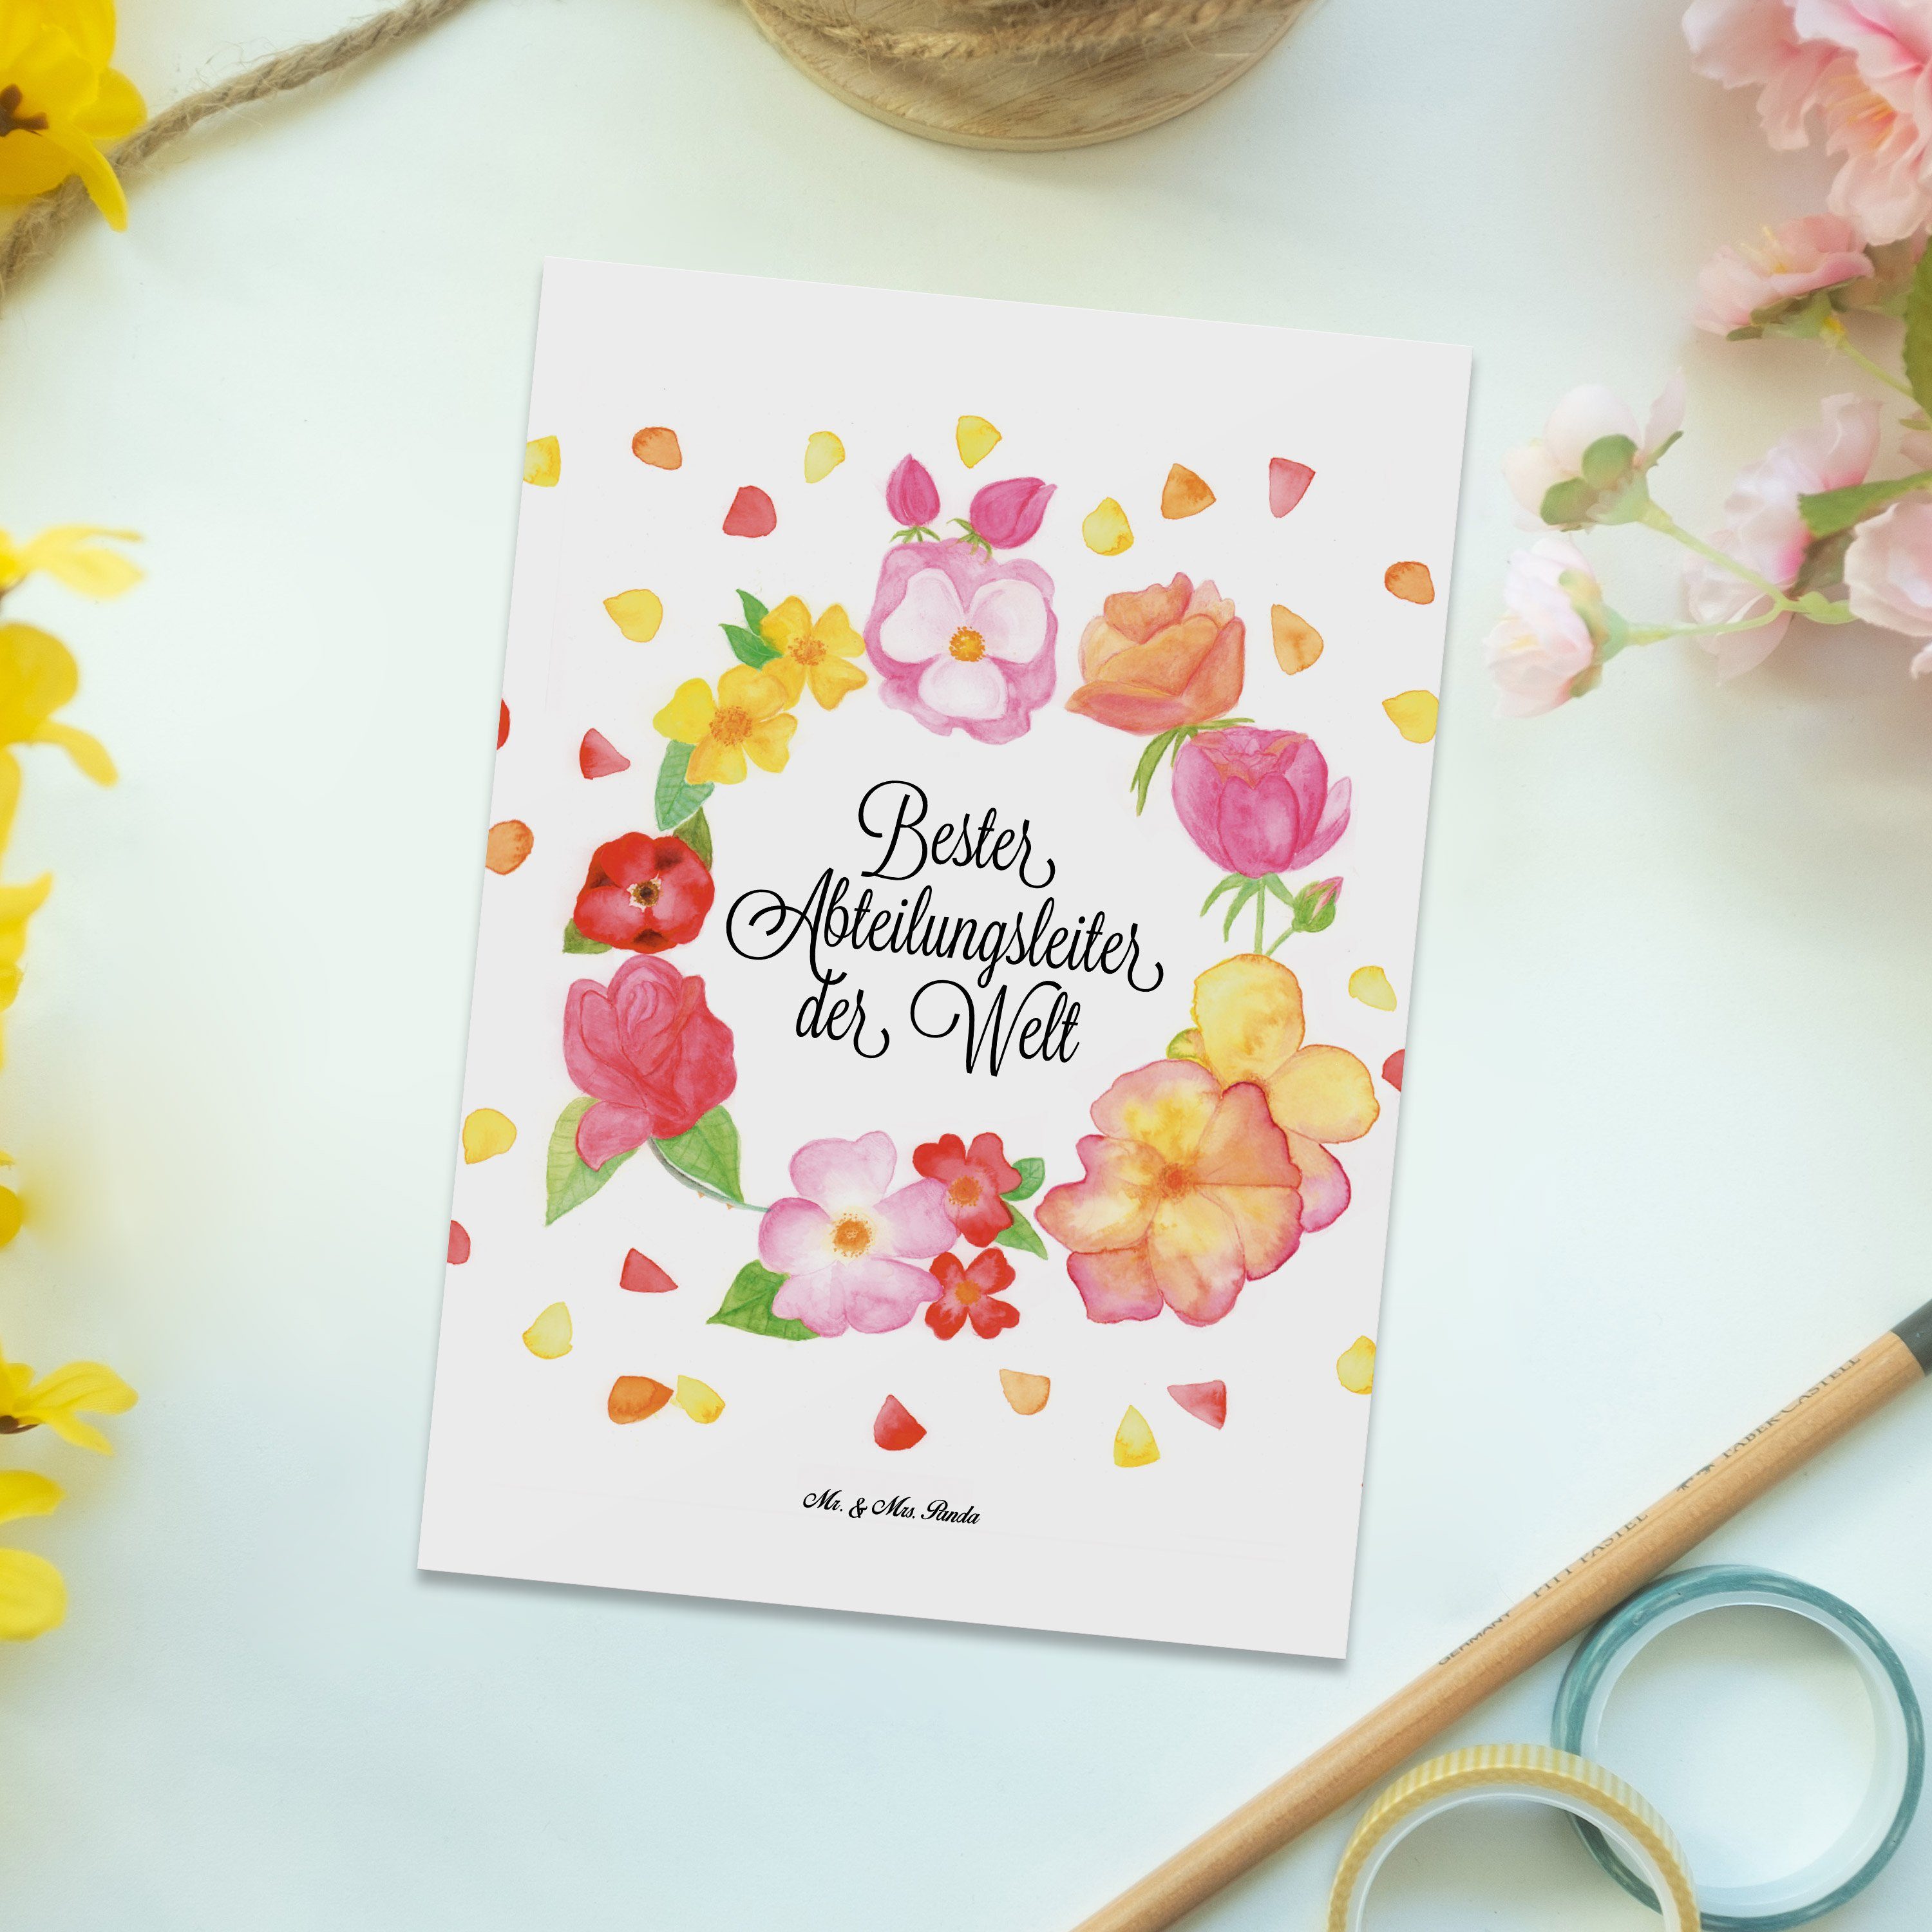 Mr. & Mrs. Panda Postkarte Abteilungsleiter - Weiß - Geschenk, Arbeit, Geburtstagskarte, Blumen